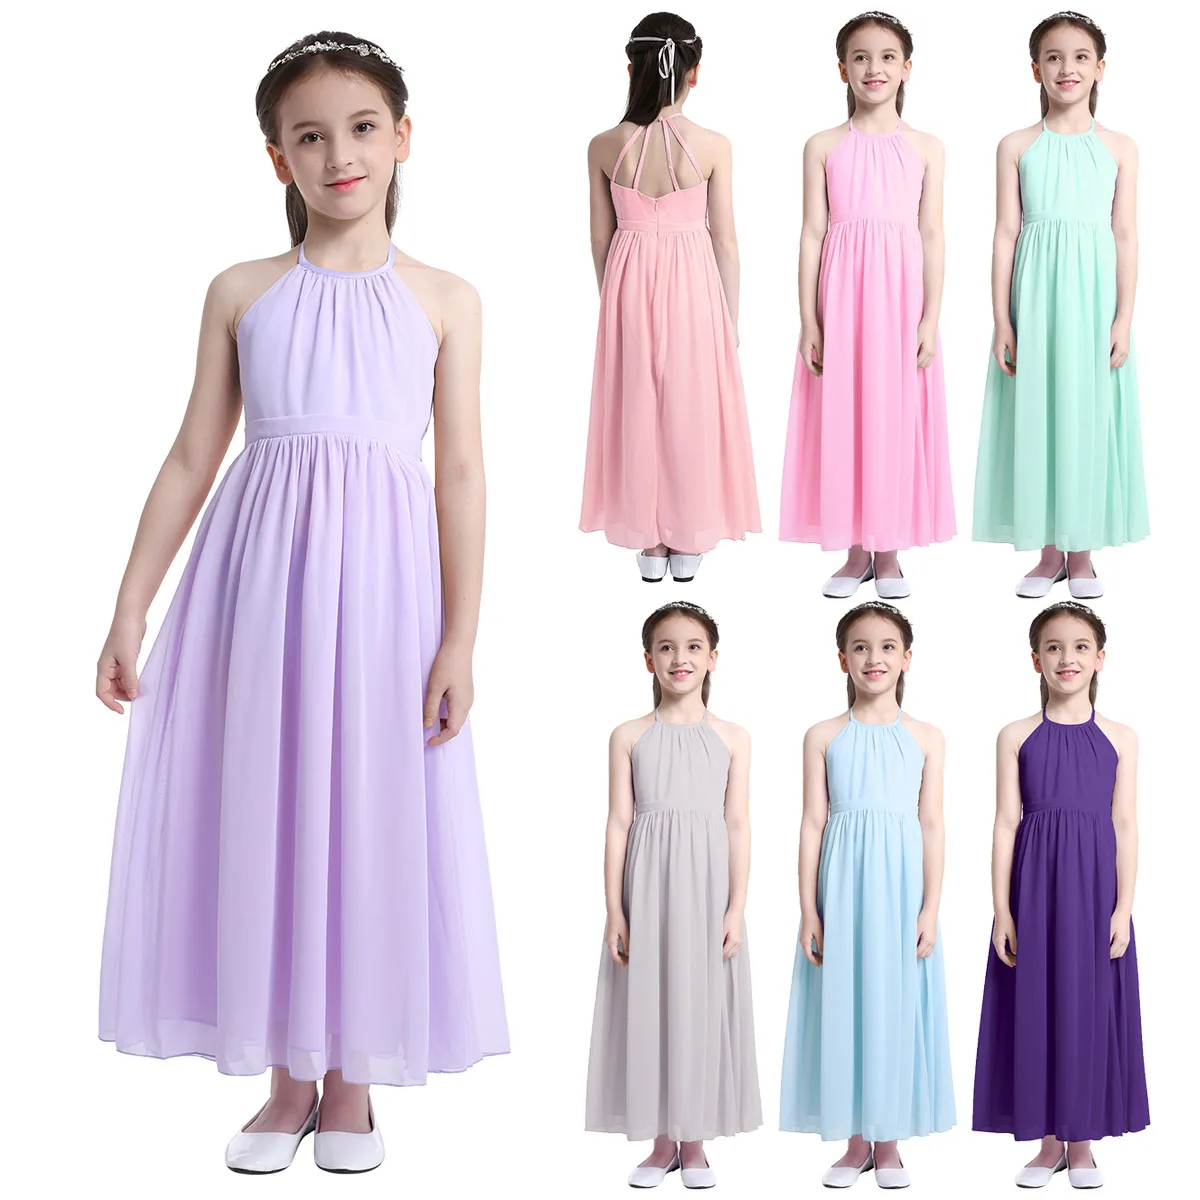 Для детей в возрасте от 4 до 14 лет Детское шифоновое платье с цветочным узором для девочек праздничное детское платье вечерние бальное платье в стиле «принцесс» для официальное мероприятие платье с цветочным рисунком для свадебного торжества